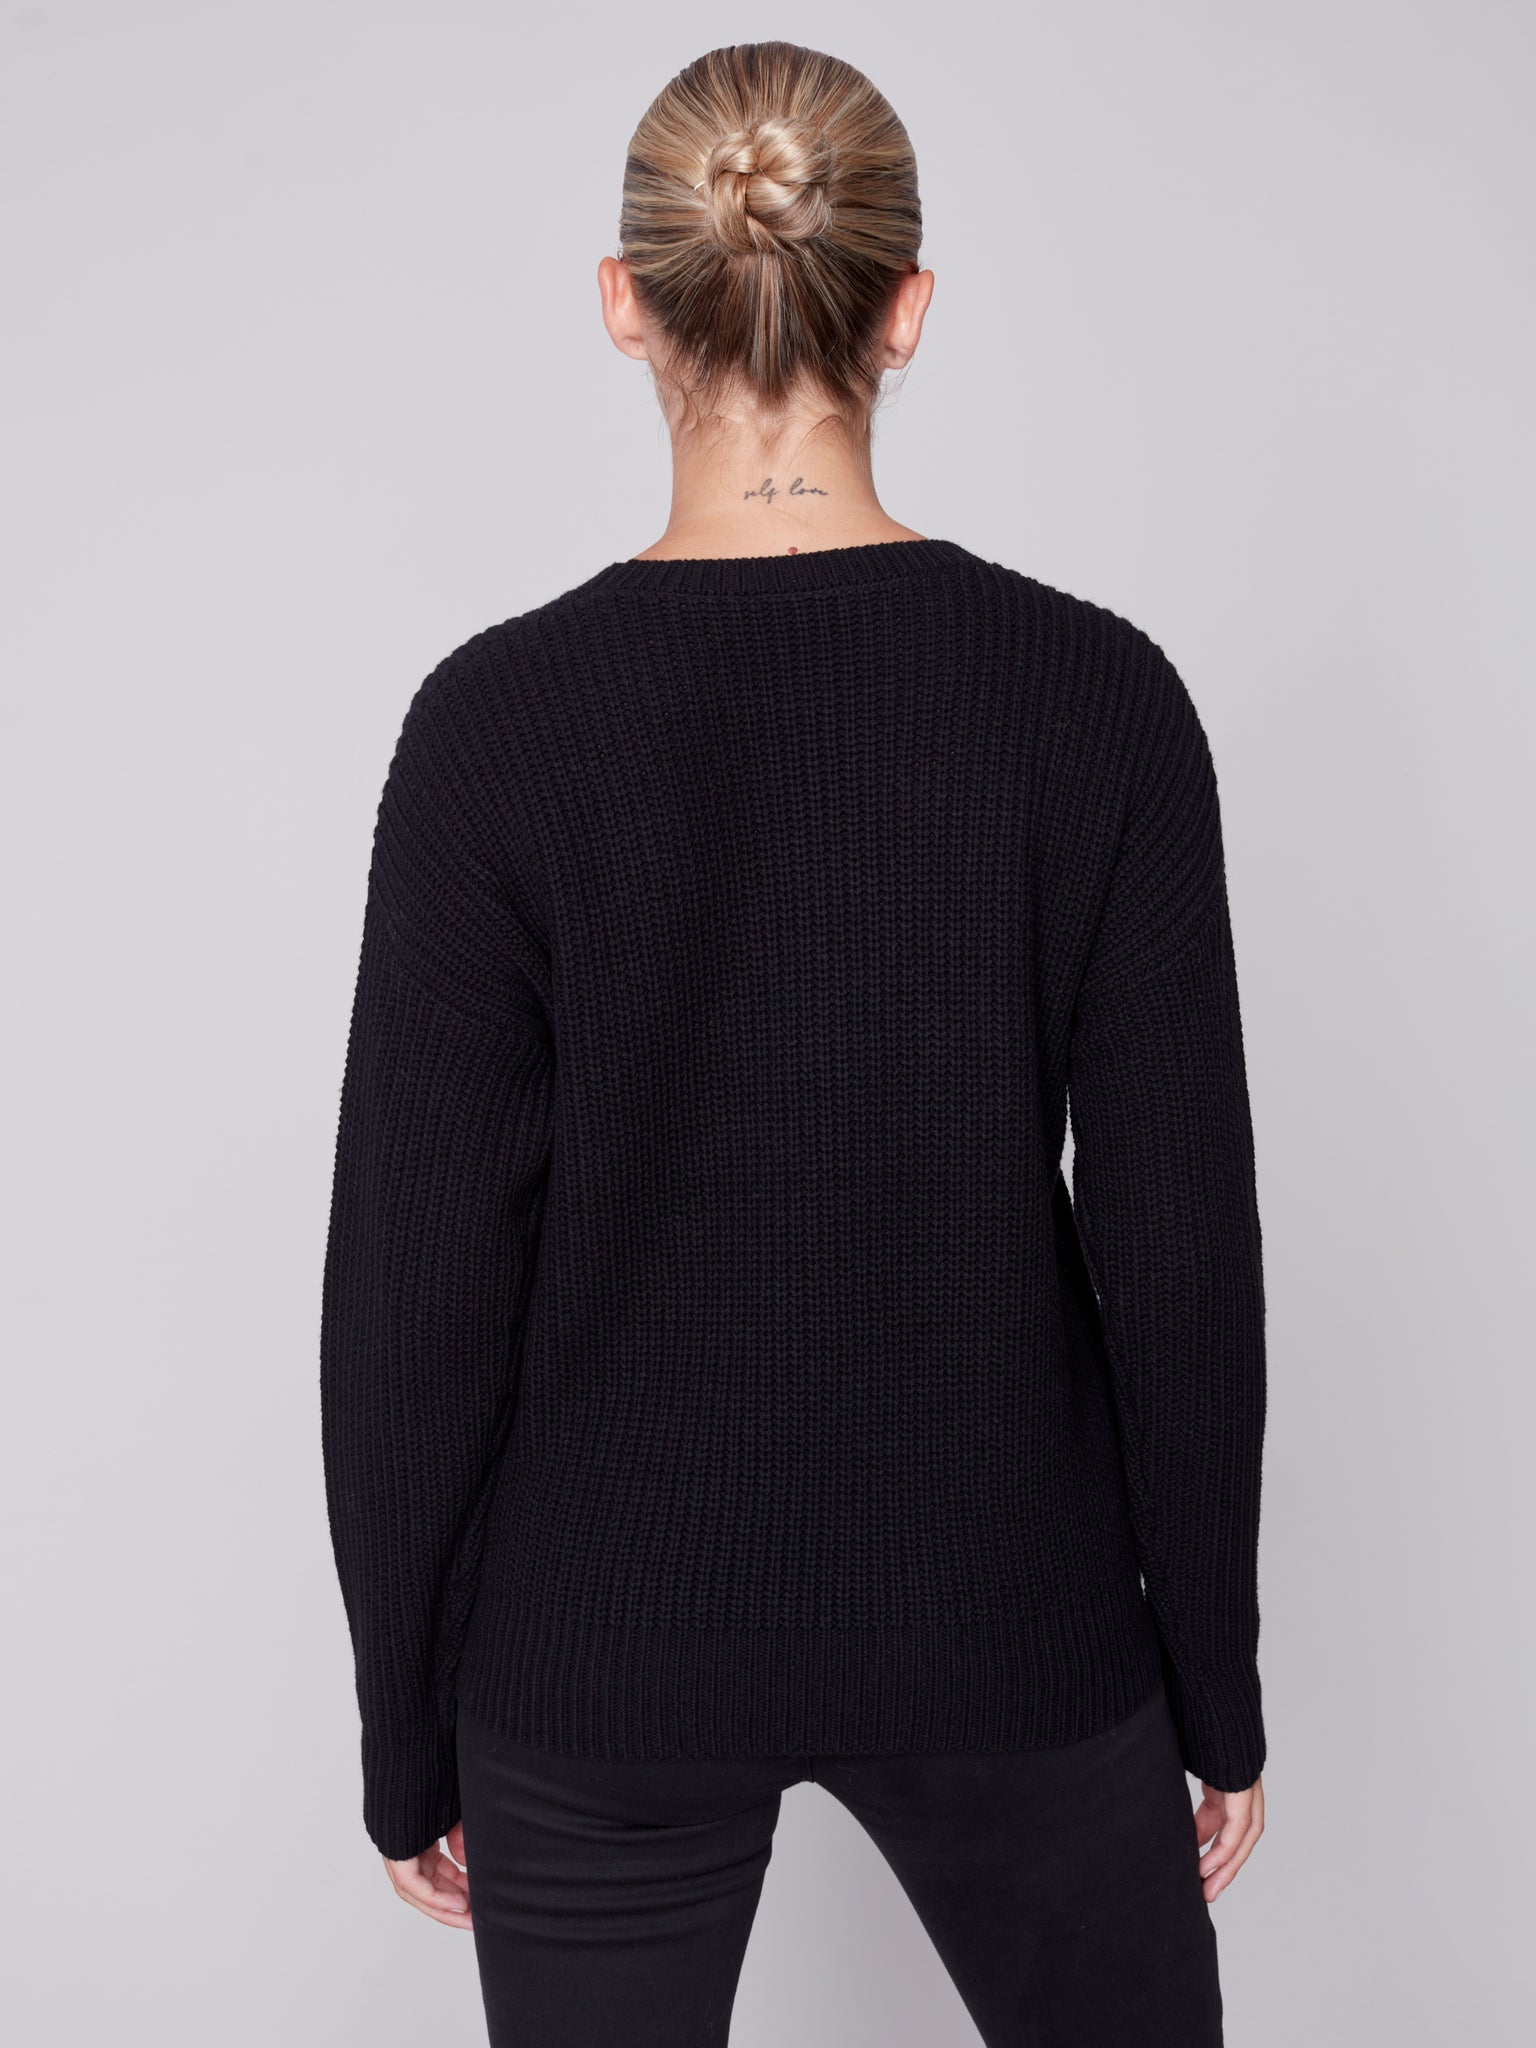 Abbey Sweater